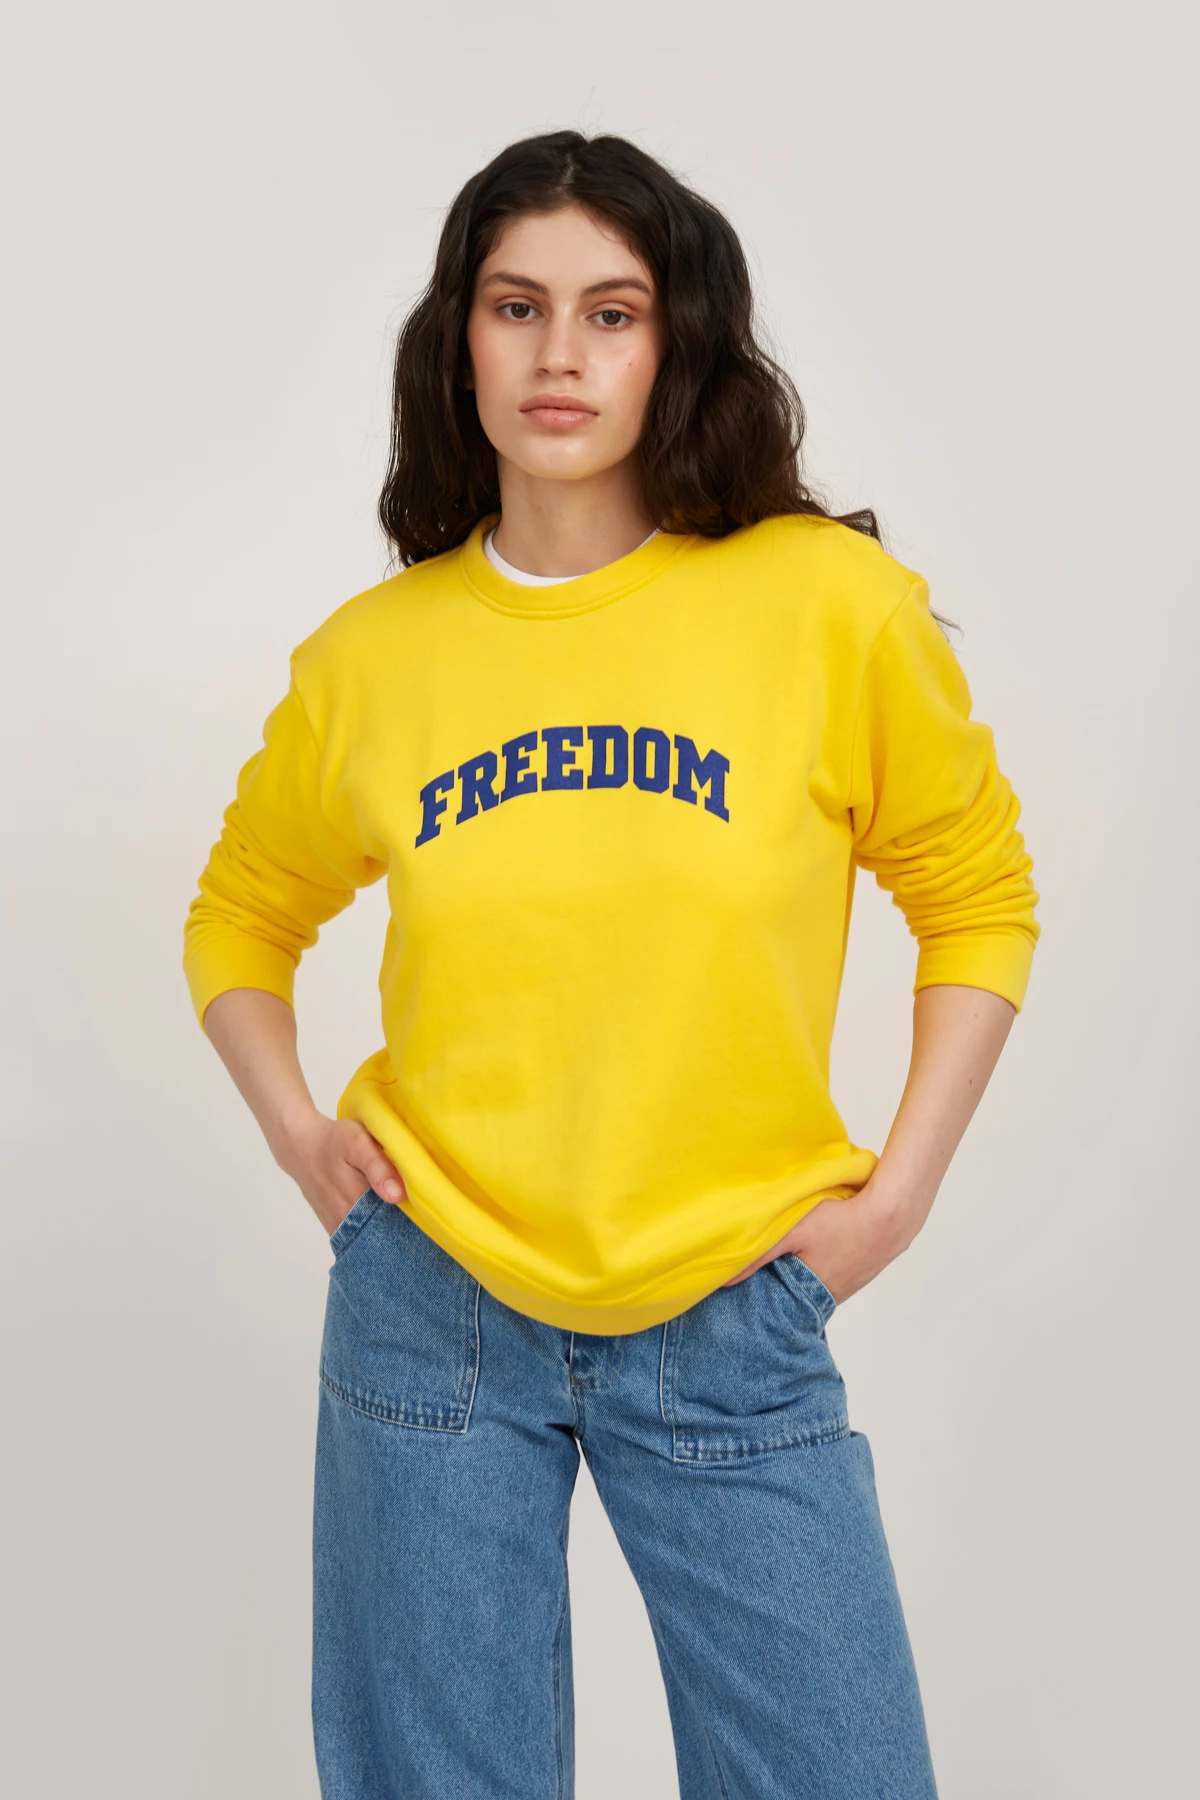 Жёлтый трикотажный свитшот с принтом "Freedom", фото 1